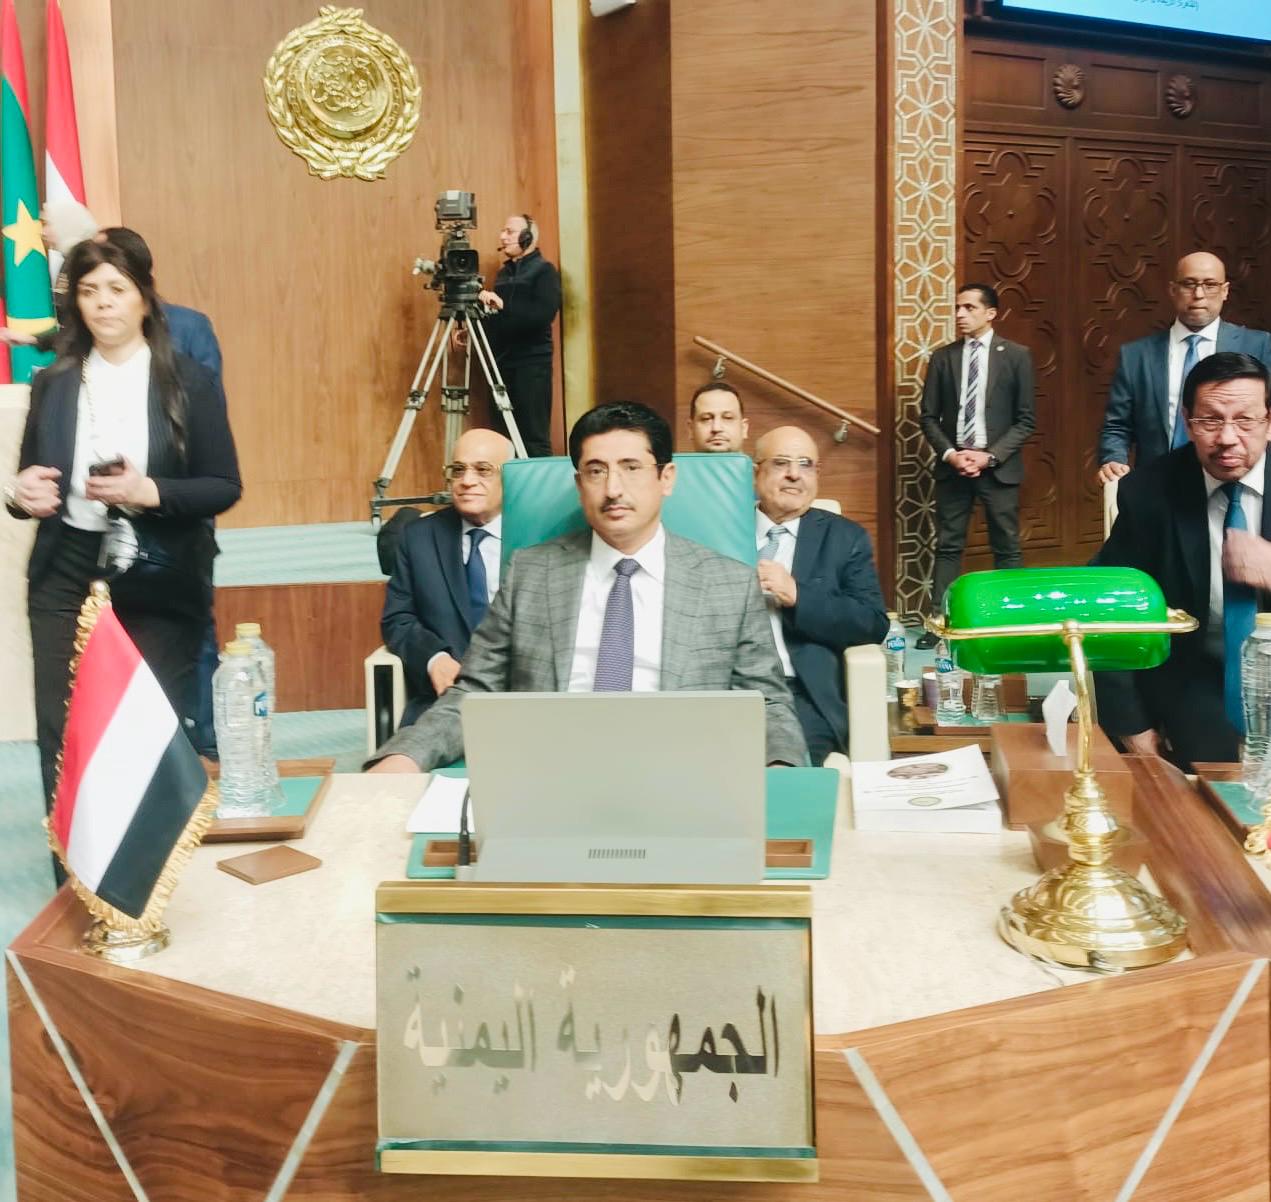 اليمن تشارك في اجتماع المجلس الوزاري لجامعة الدول العربية